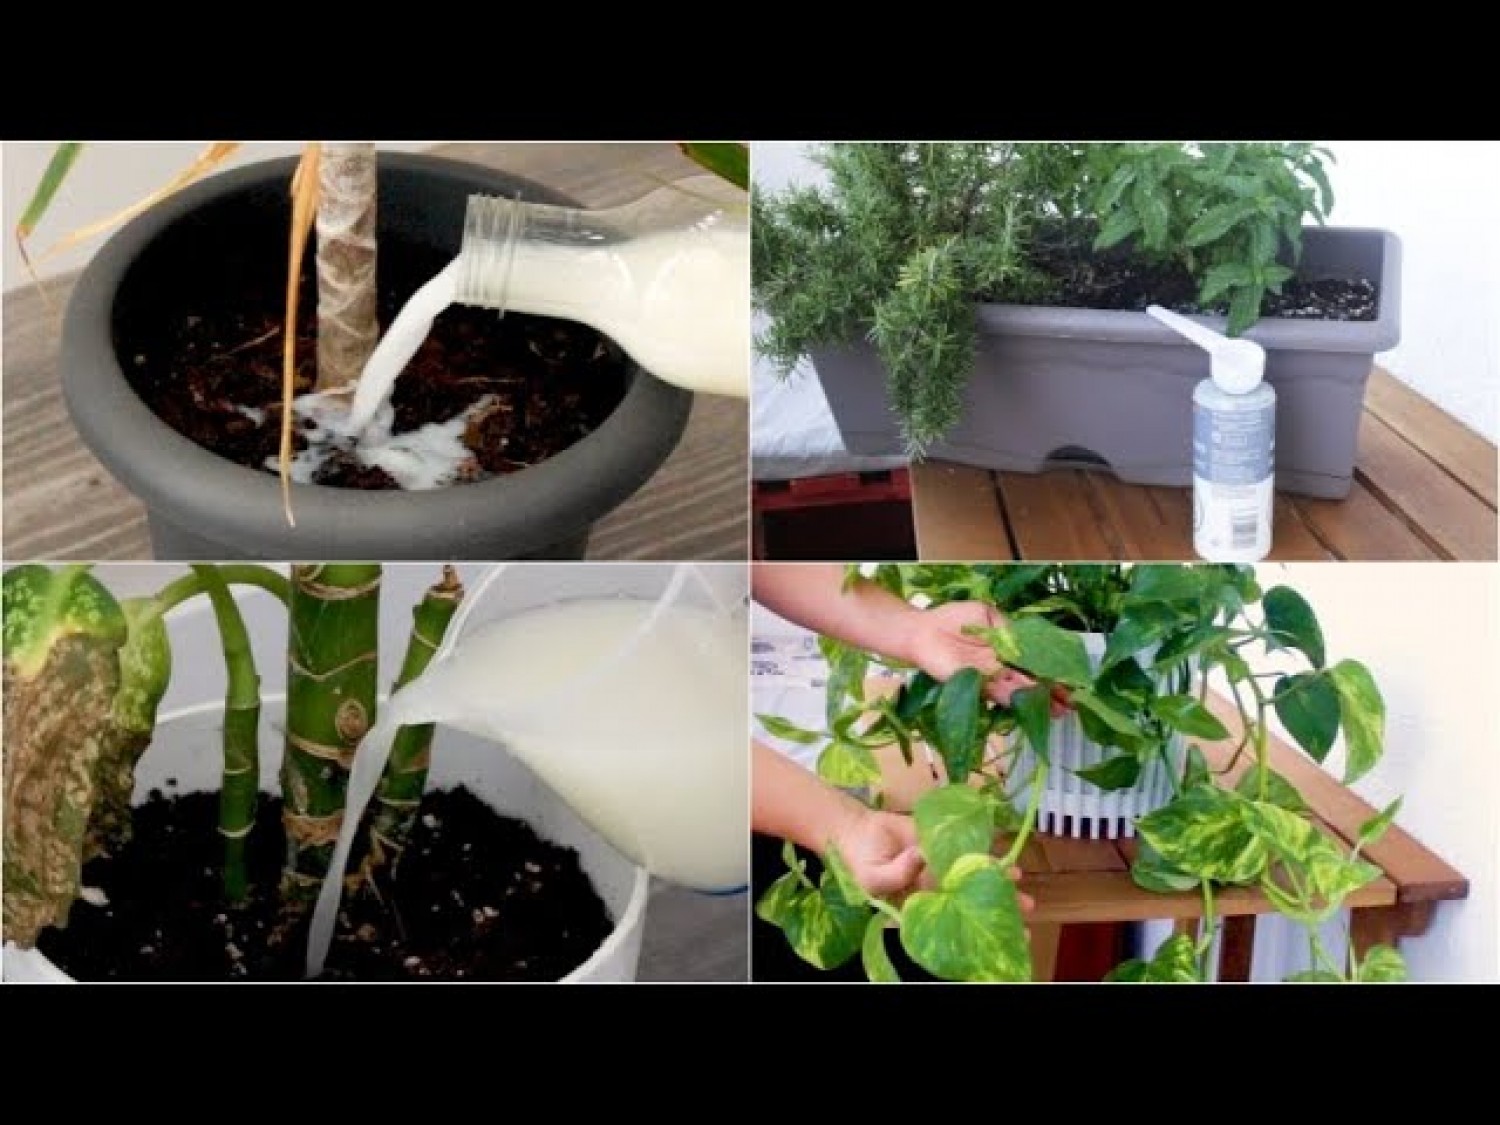 Otthon elkészíthető növénytápok, ami semmibe sem kerül (videó)